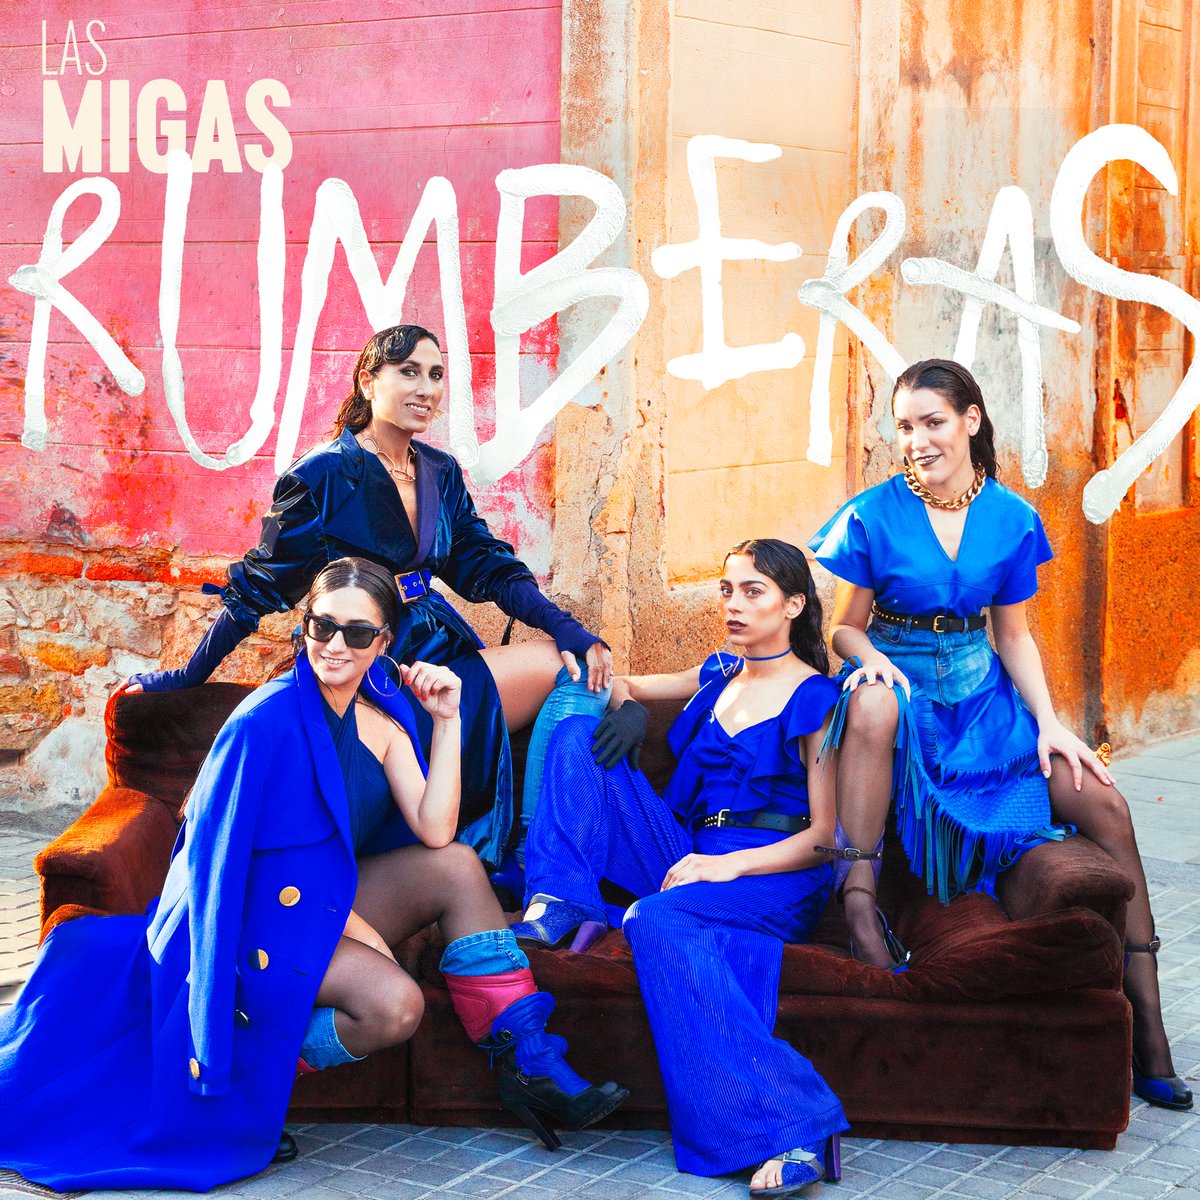 📢 Avui a @MetropoliRadio4: 🎻 Rebem la visita de @LAS_MIGAS per presentar l'àlbum #RUMBERAS el seu nou disc homenatge a la rumba en totes les seves versions: la catalana, la cubana, la flamenca... 🗓️ DIMECRES 03/04 ⏰21h 🔴 Sintonitza'ns #OnAir 🔗 rtve.es/r4directe/